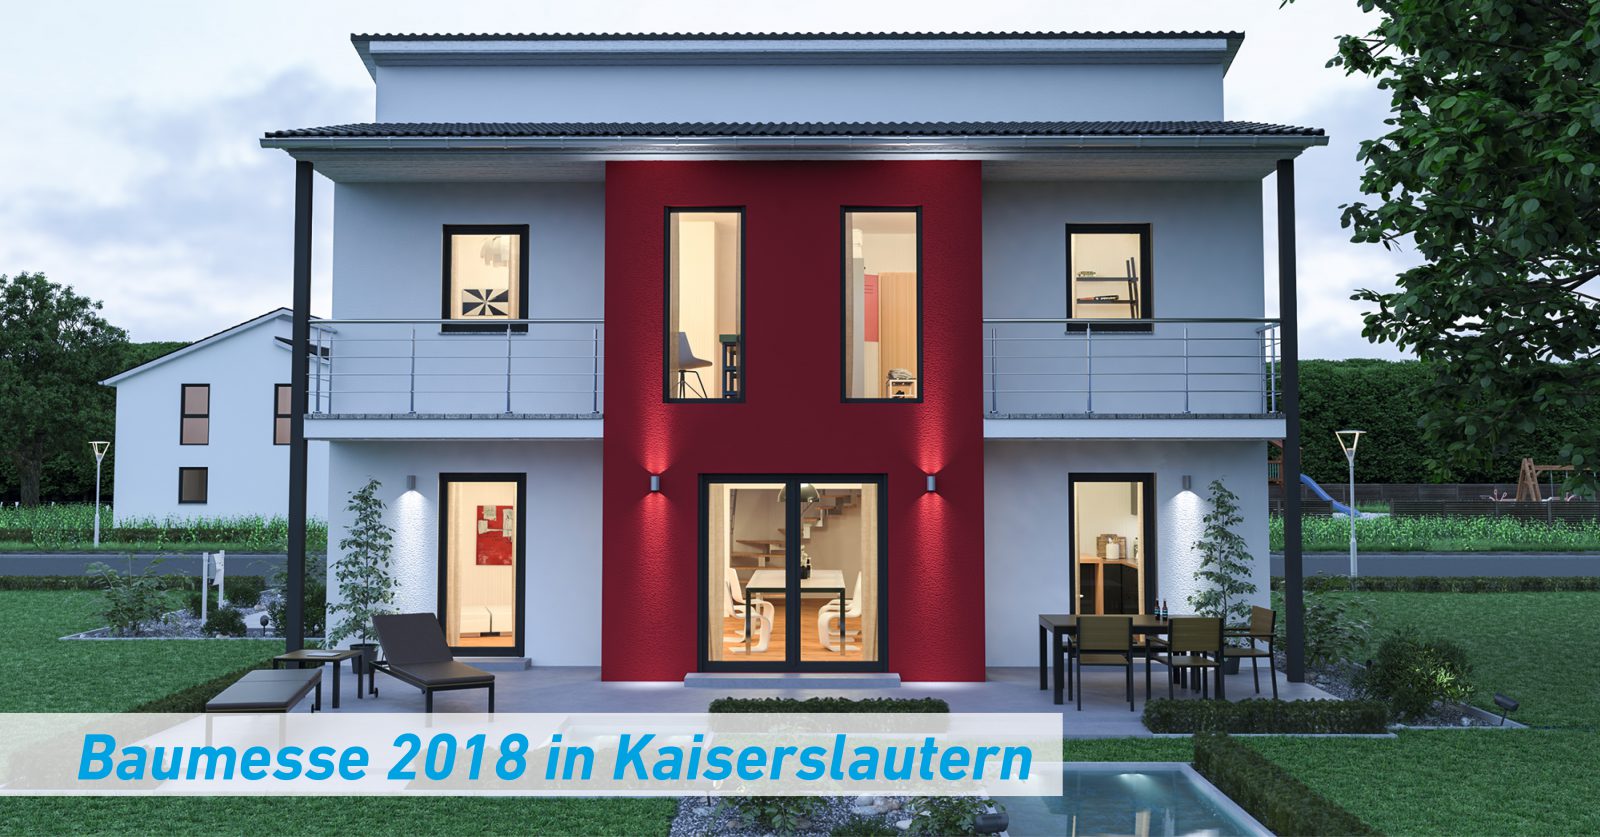 Baumesse 2018 in Kaiserslautern